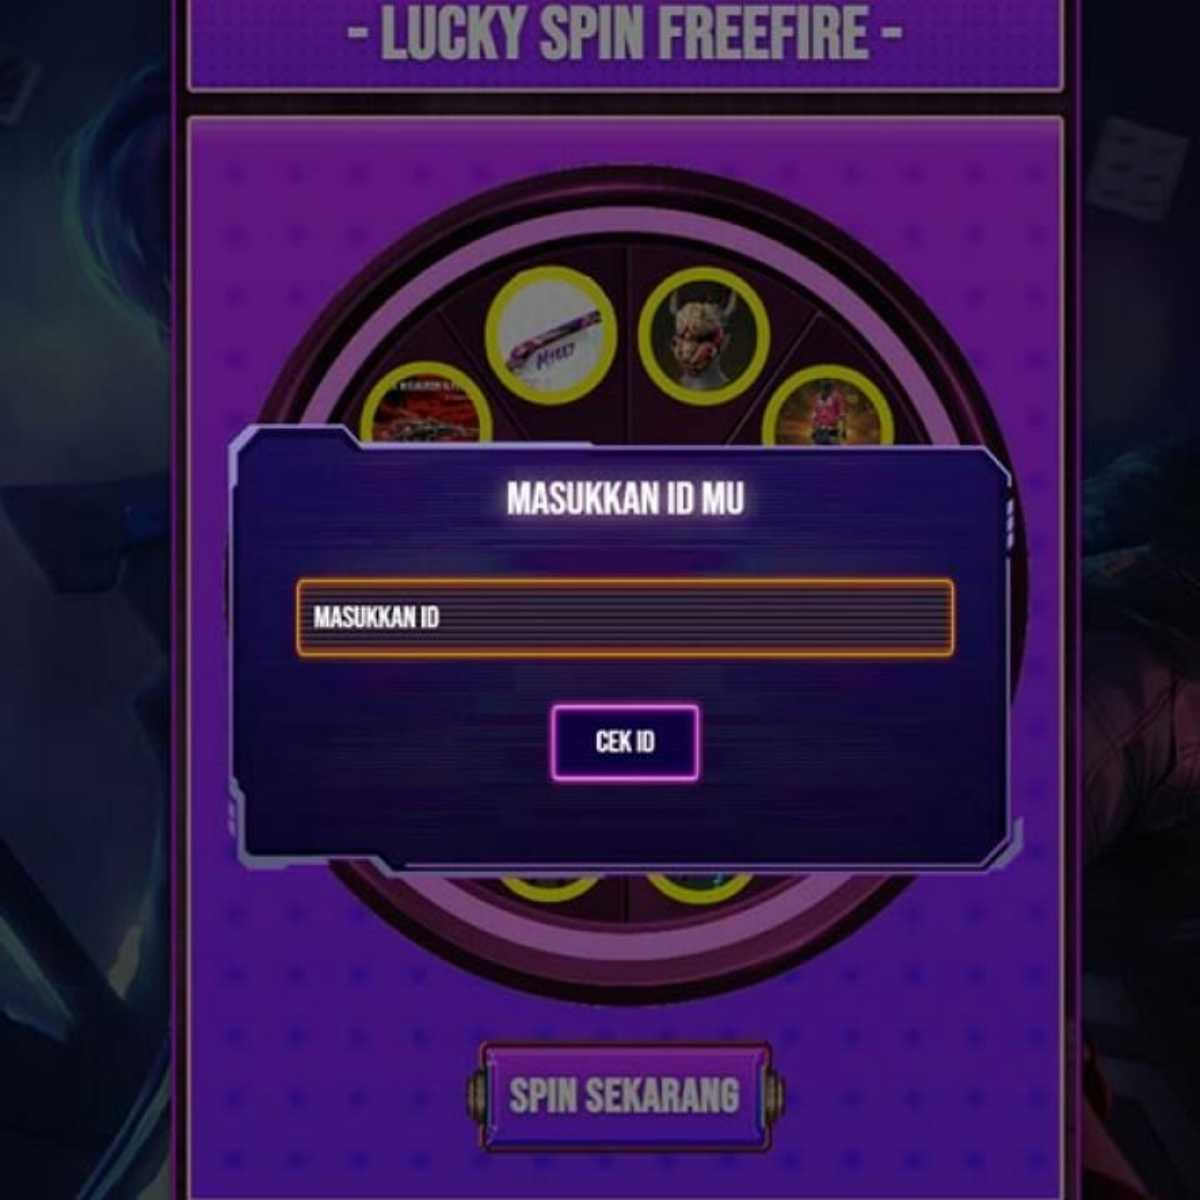 Kelebihan dan Kekurangan Luckyspinfreefire.com Dibanding Lainnya